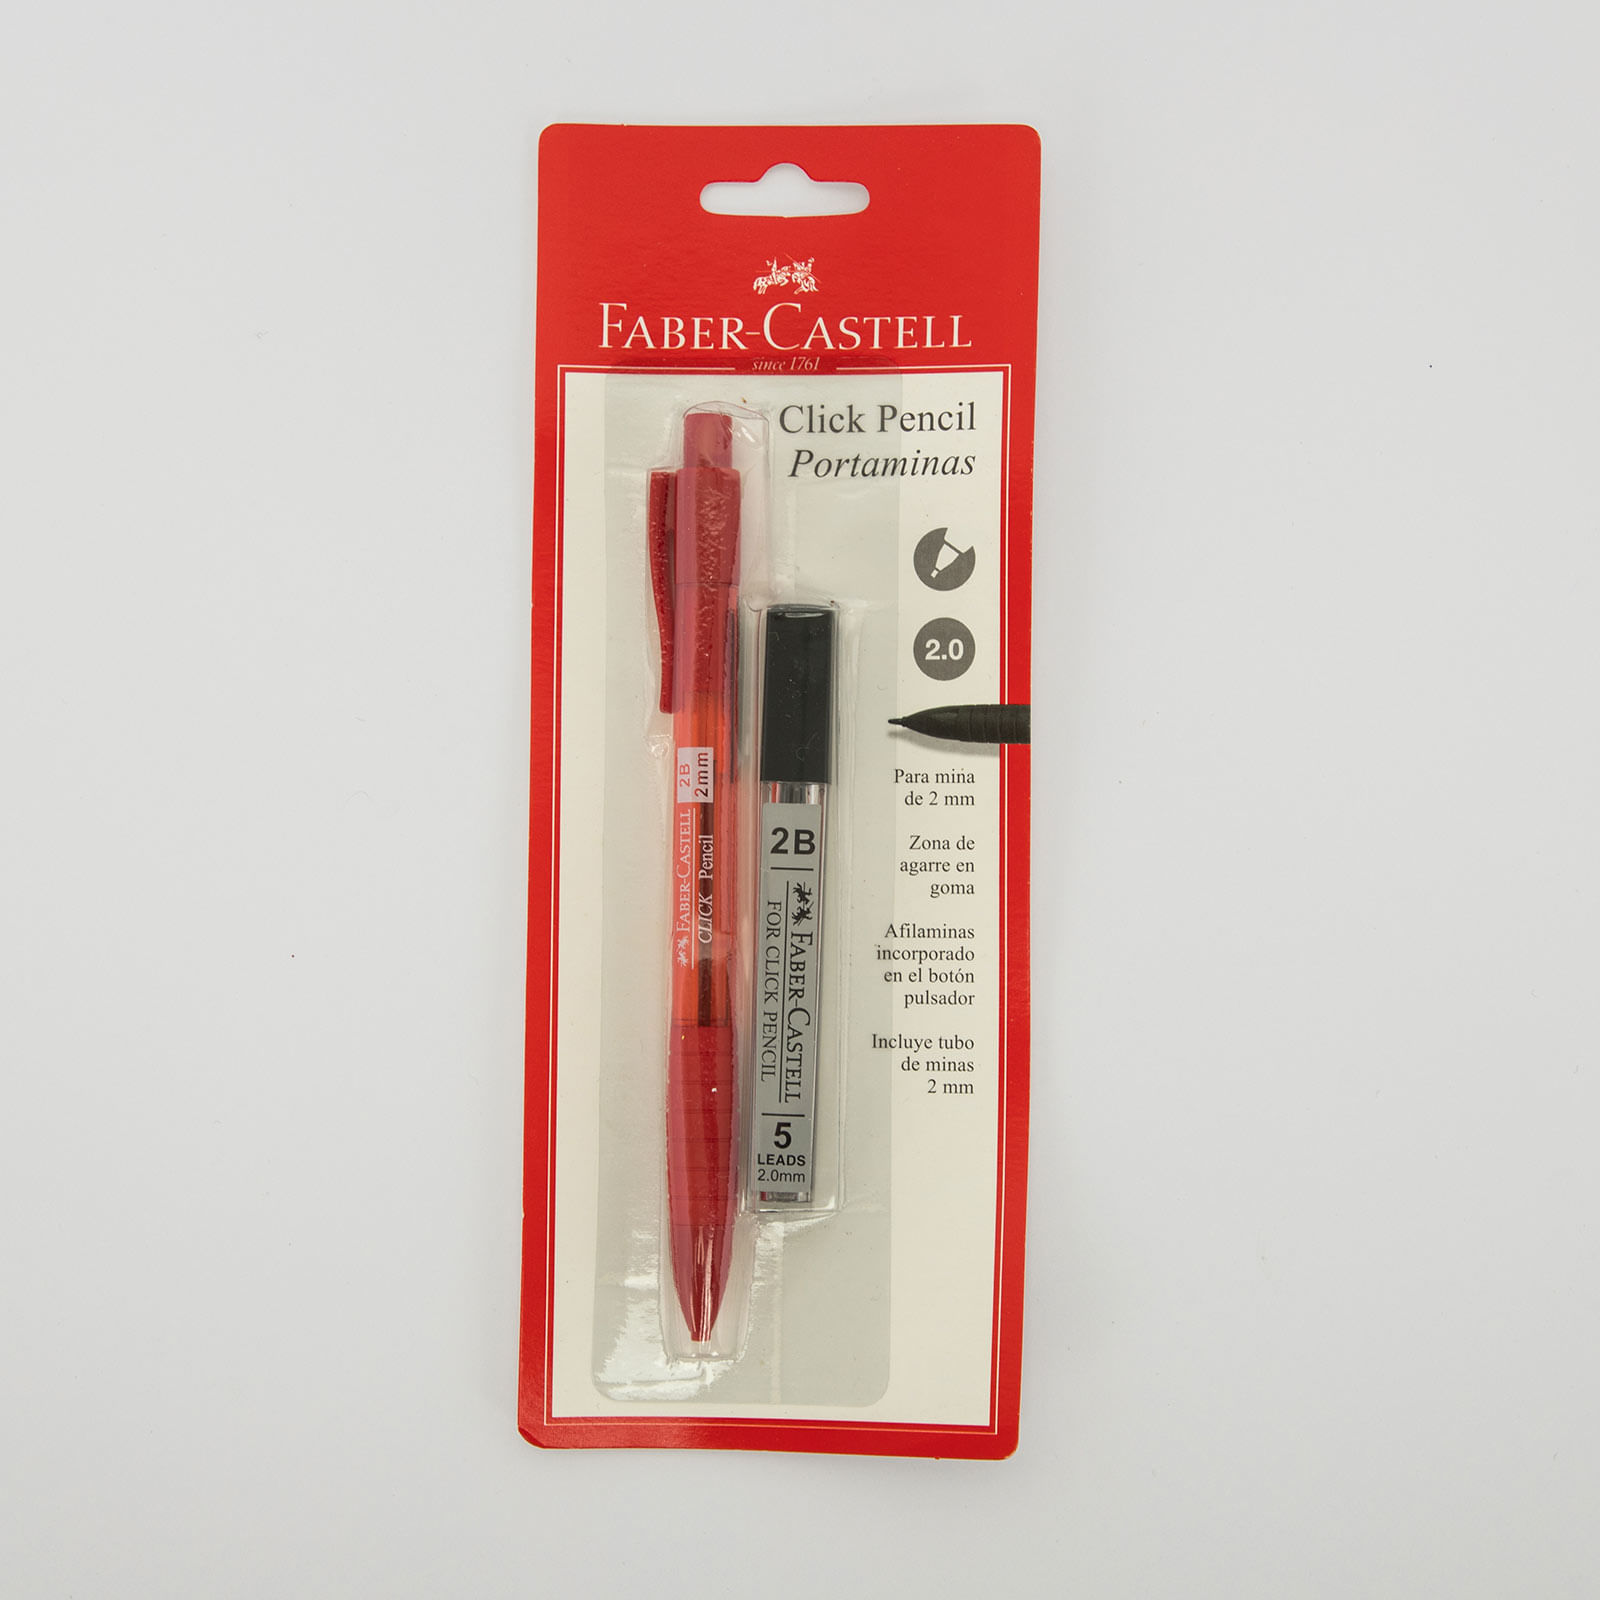 Portaminas Faber Castell Click Lápiz 2B+ minas 2mm